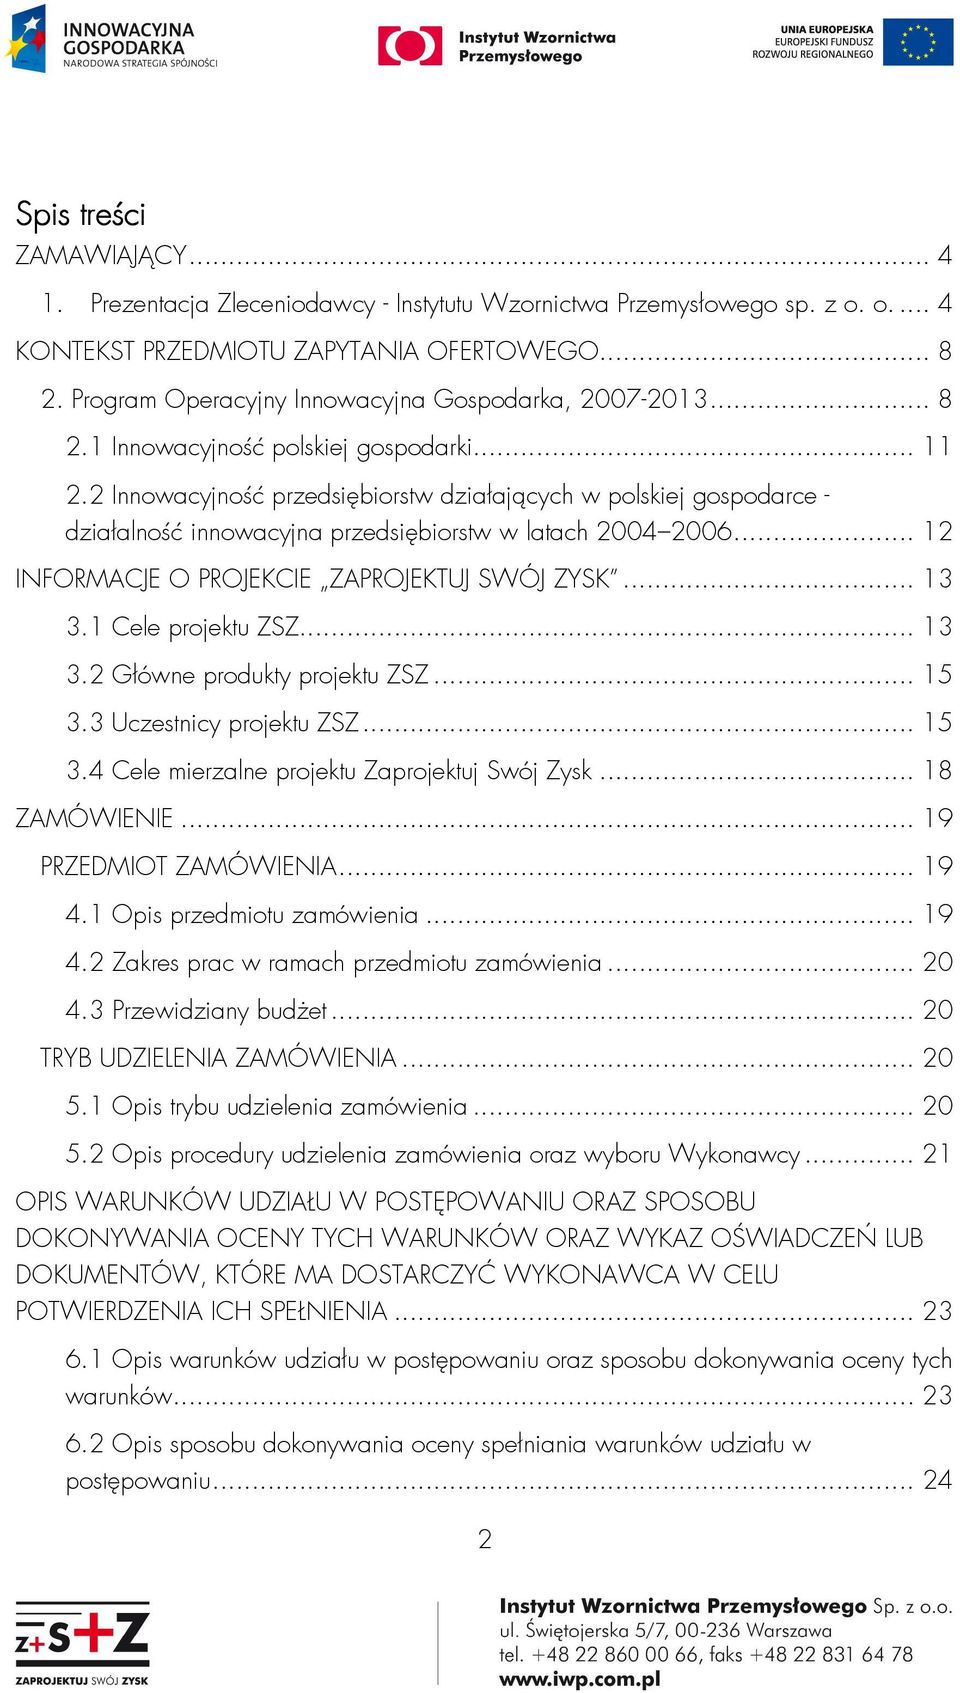 2 Innowacyjność przedsiębiorstw działających w polskiej gospodarce - działalność innowacyjna przedsiębiorstw w latach 2004 2006... 12 INFORMACJE O PROJEKCIE ZAPROJEKTUJ SWÓJ ZYSK... 13 3.